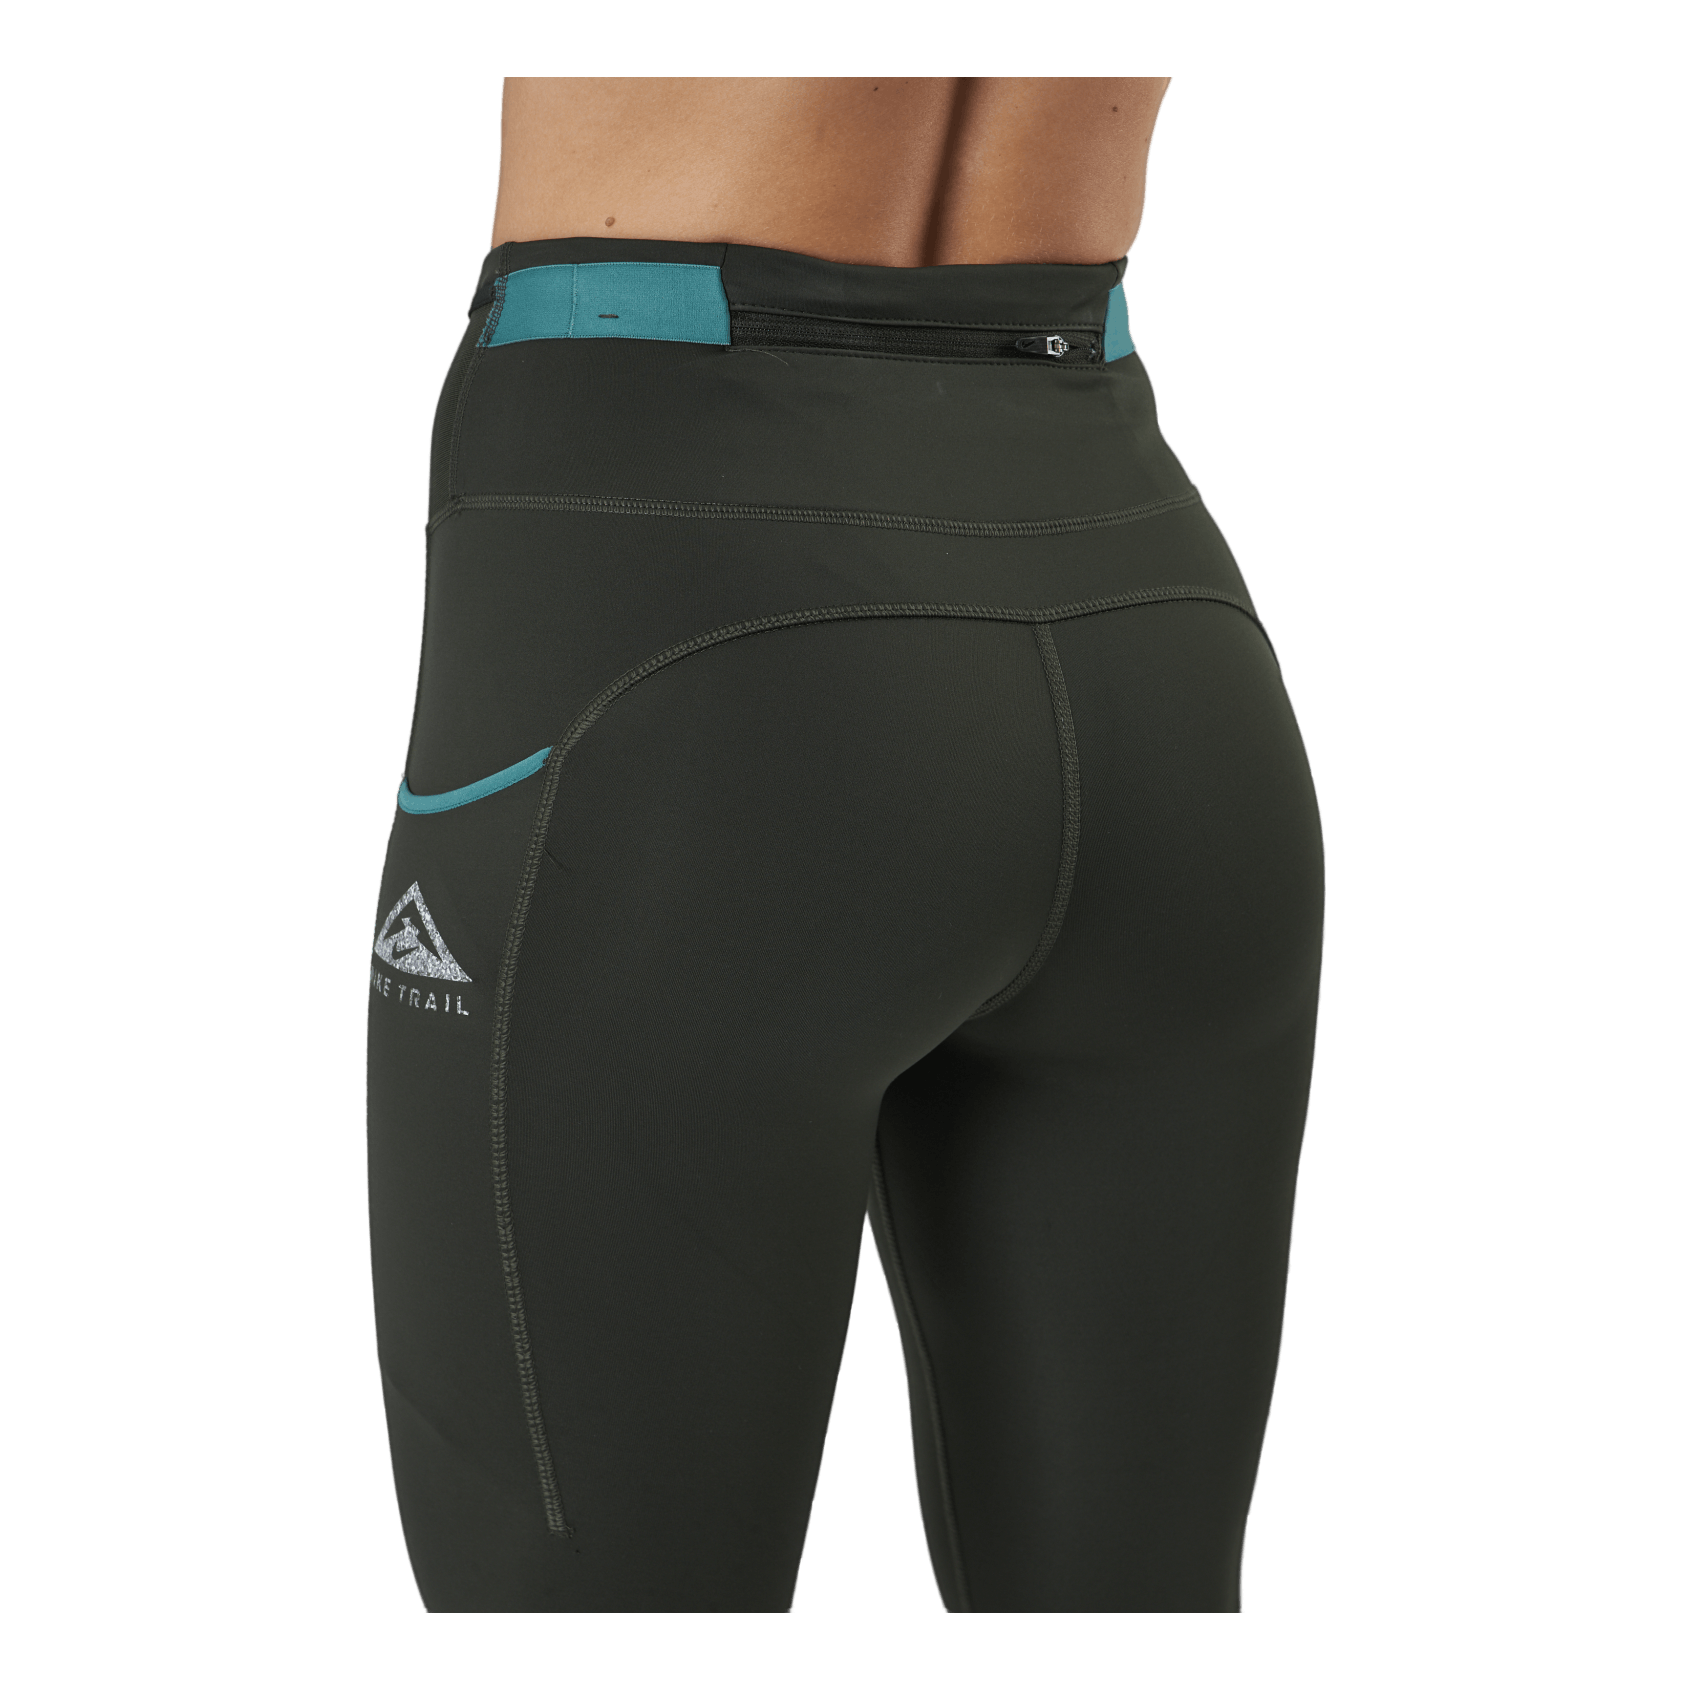 Inov-8 Tight running leggings for women - Soccer Sport Fitness